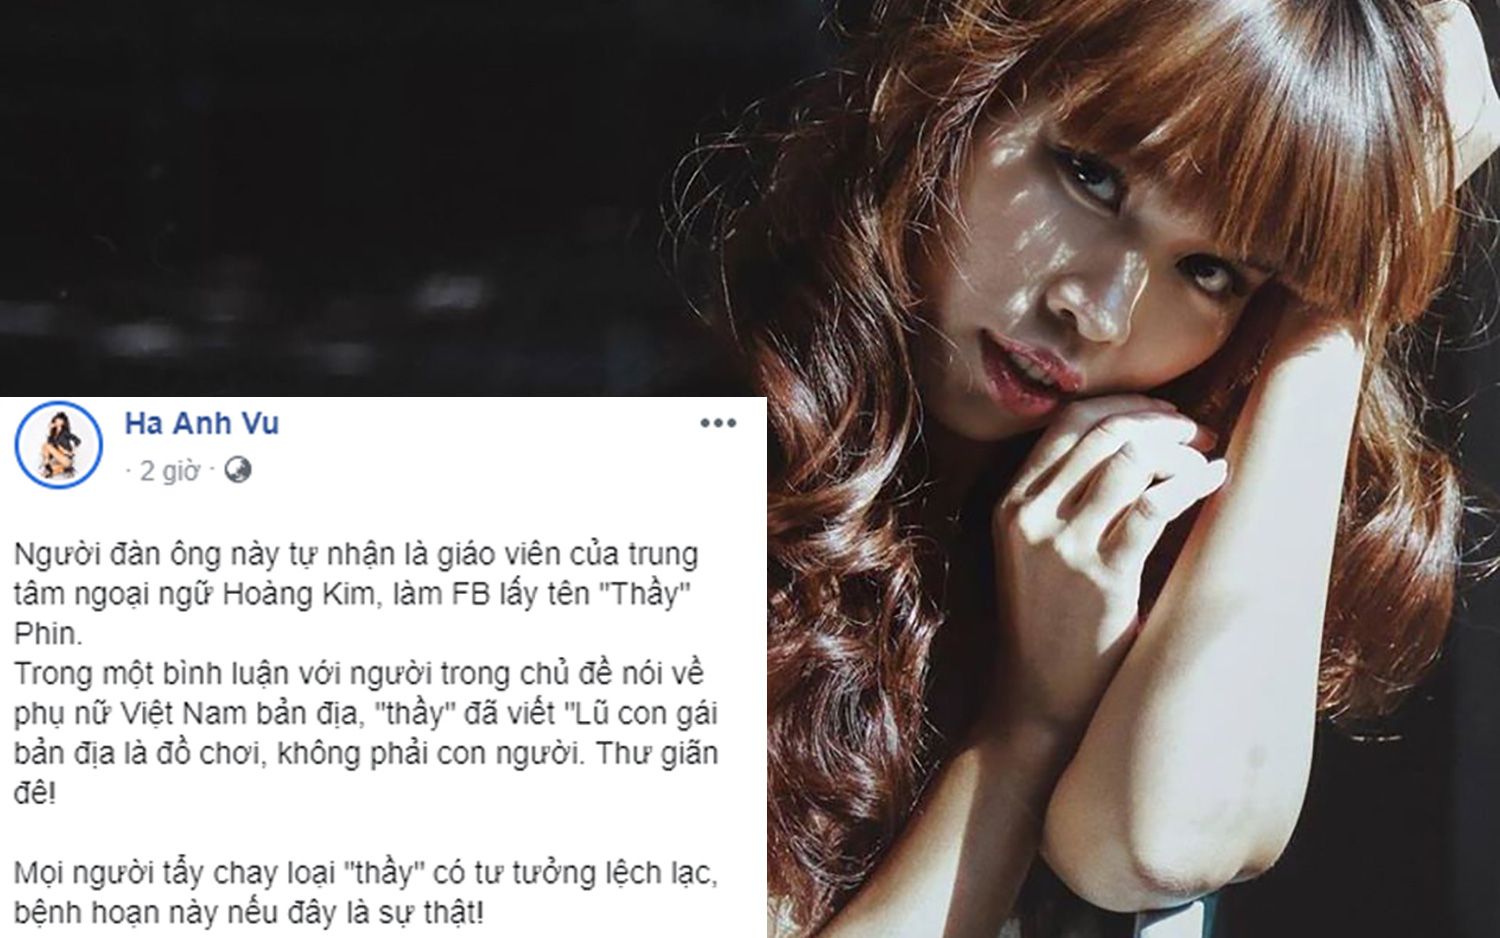 Siêu mẫu Hà Anh bất ngờ đăng đàn tố giáo viên người nước ngoài coi thường phụ nữ Việt, cộng đồng mạng ngay lập tức đòi tẩy chay, trục xuất về nước